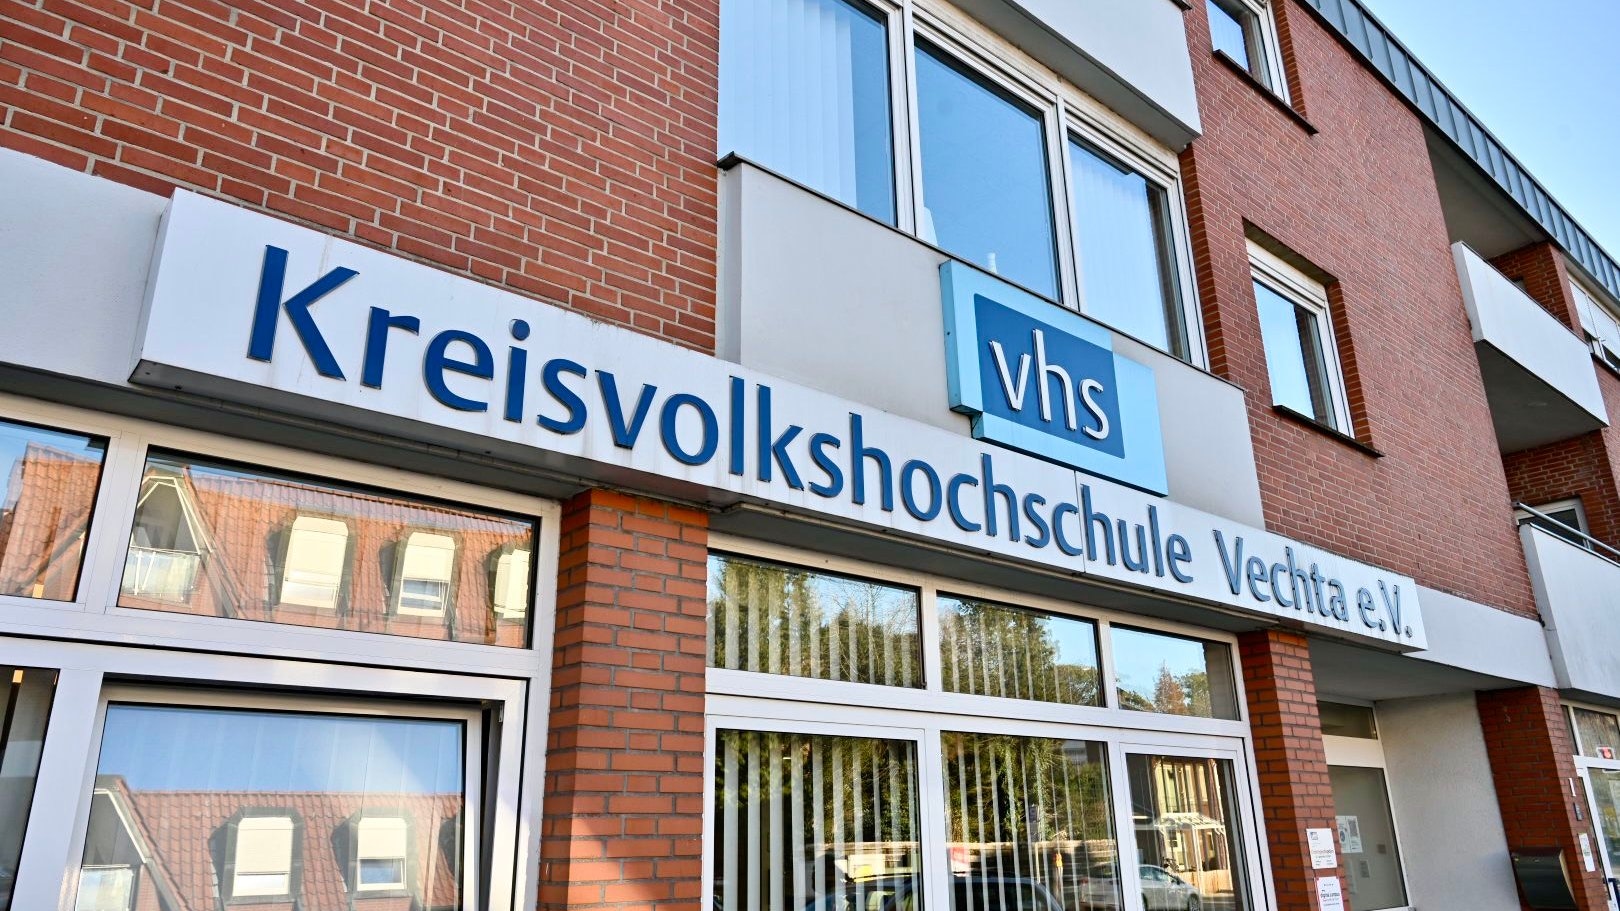 Die Kreisvolkshochschule in Vechta: Der Verein mit seinem breiten Bildungsangebot ist auf Unterstützung angewiesen. Foto: M. Niehues